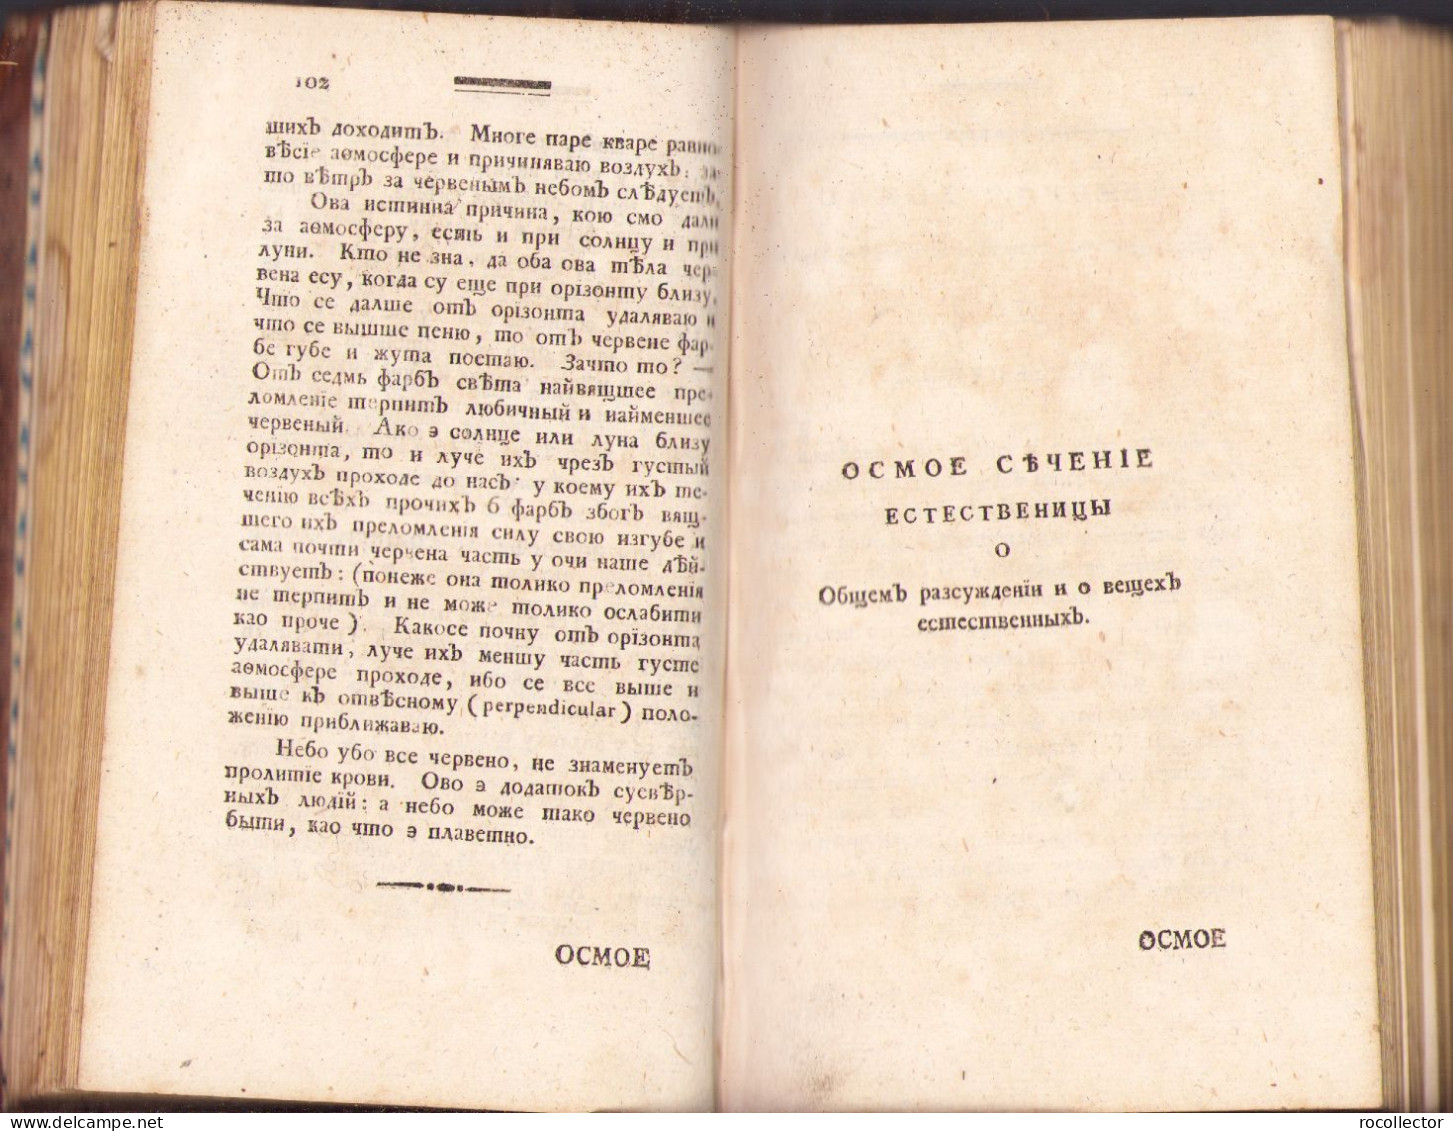 Фисiка Аөанасїа Стойковича 1803 Будимě tom III First Serbian handbook of Physics 457SP